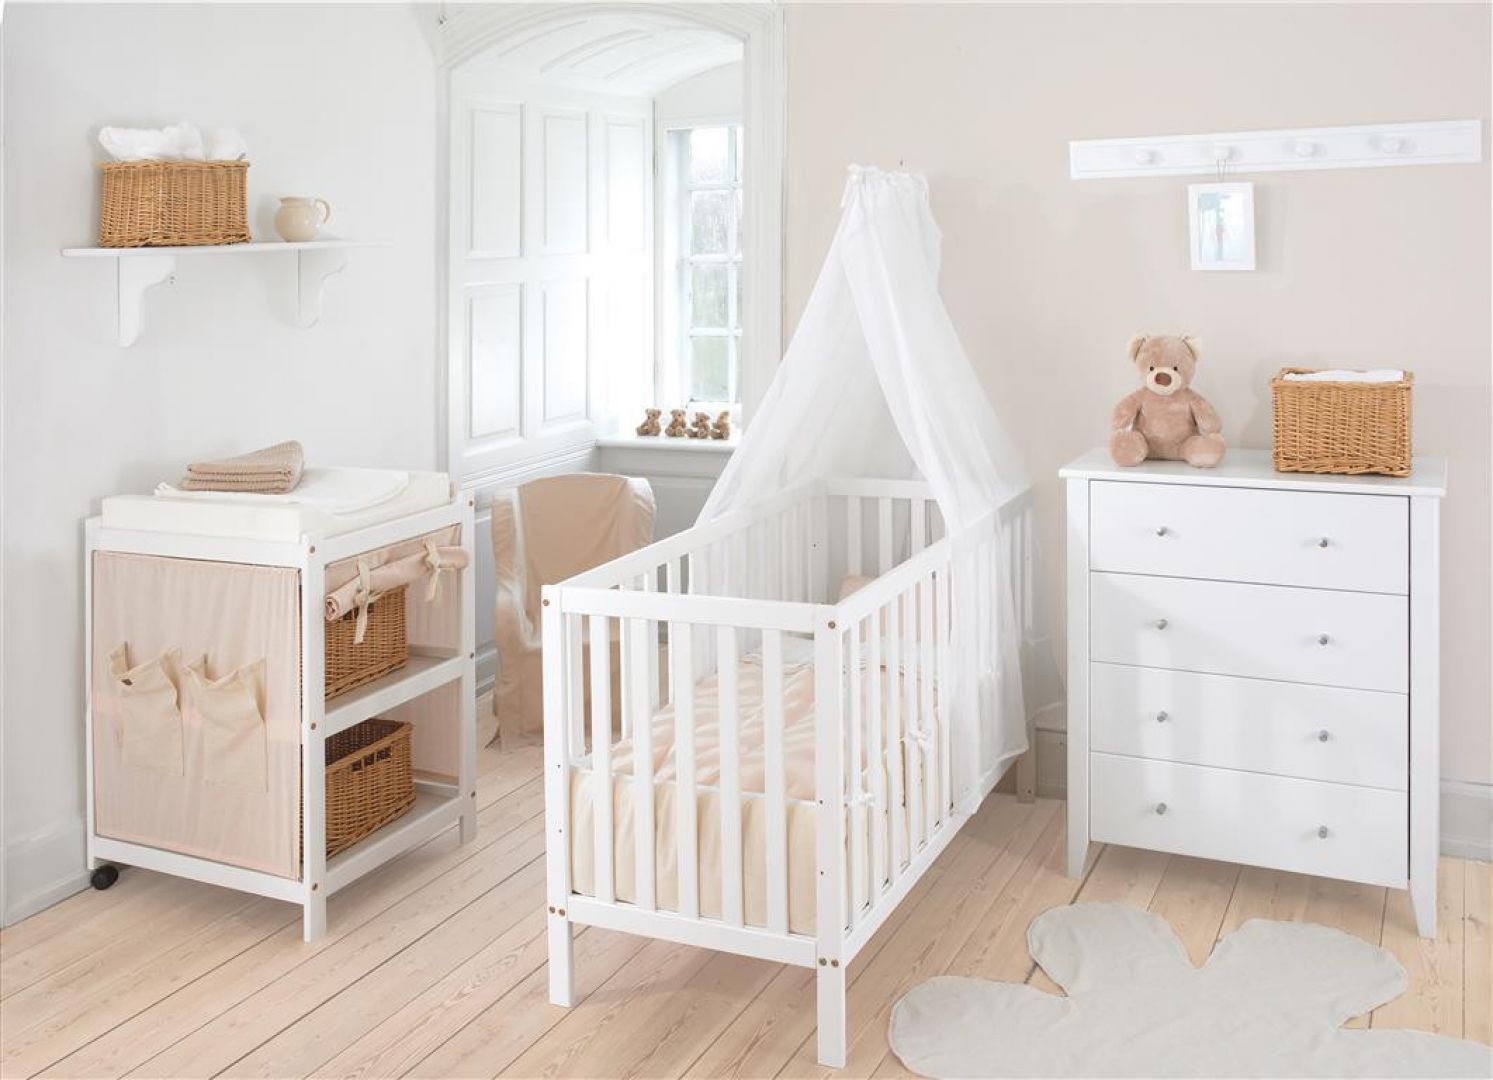 Białe meble są doskonałym wyborem do pokoju niemowlęcia. Fot. Seart